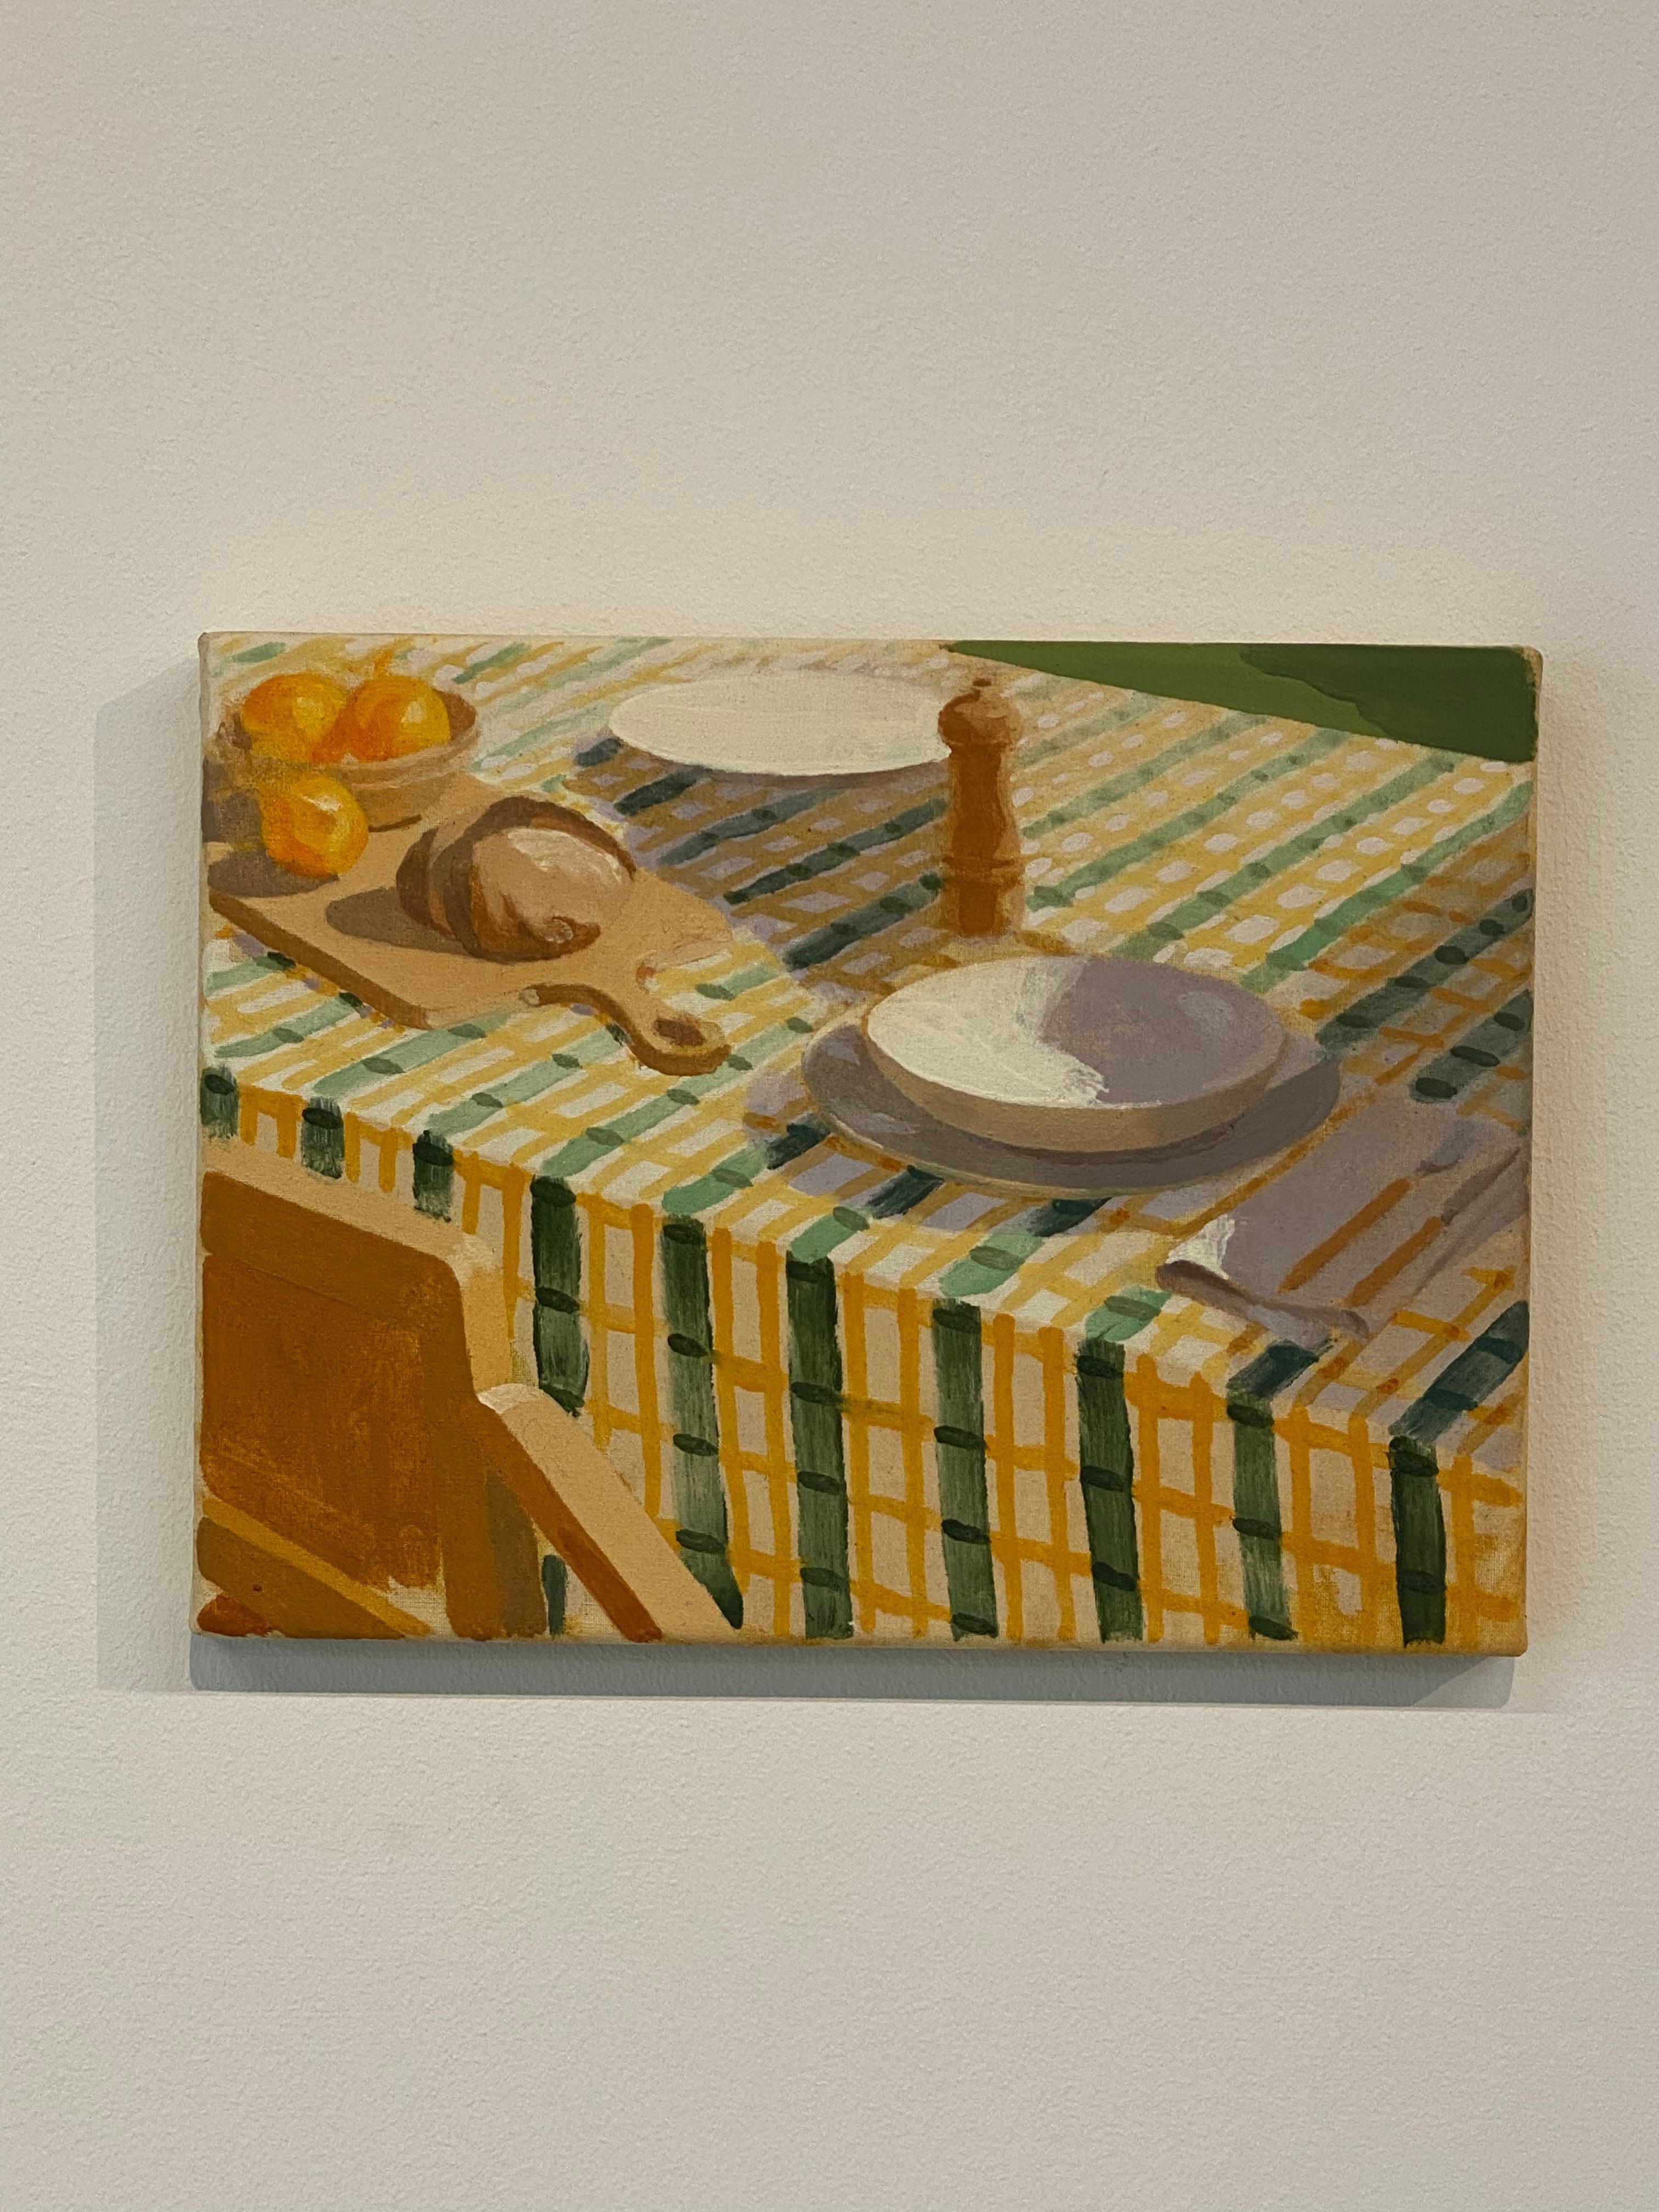 Frühstück – zeitgenössisches niederländisches Stillleben des 21. Jahrhunderts – Painting von Lars van Wieren